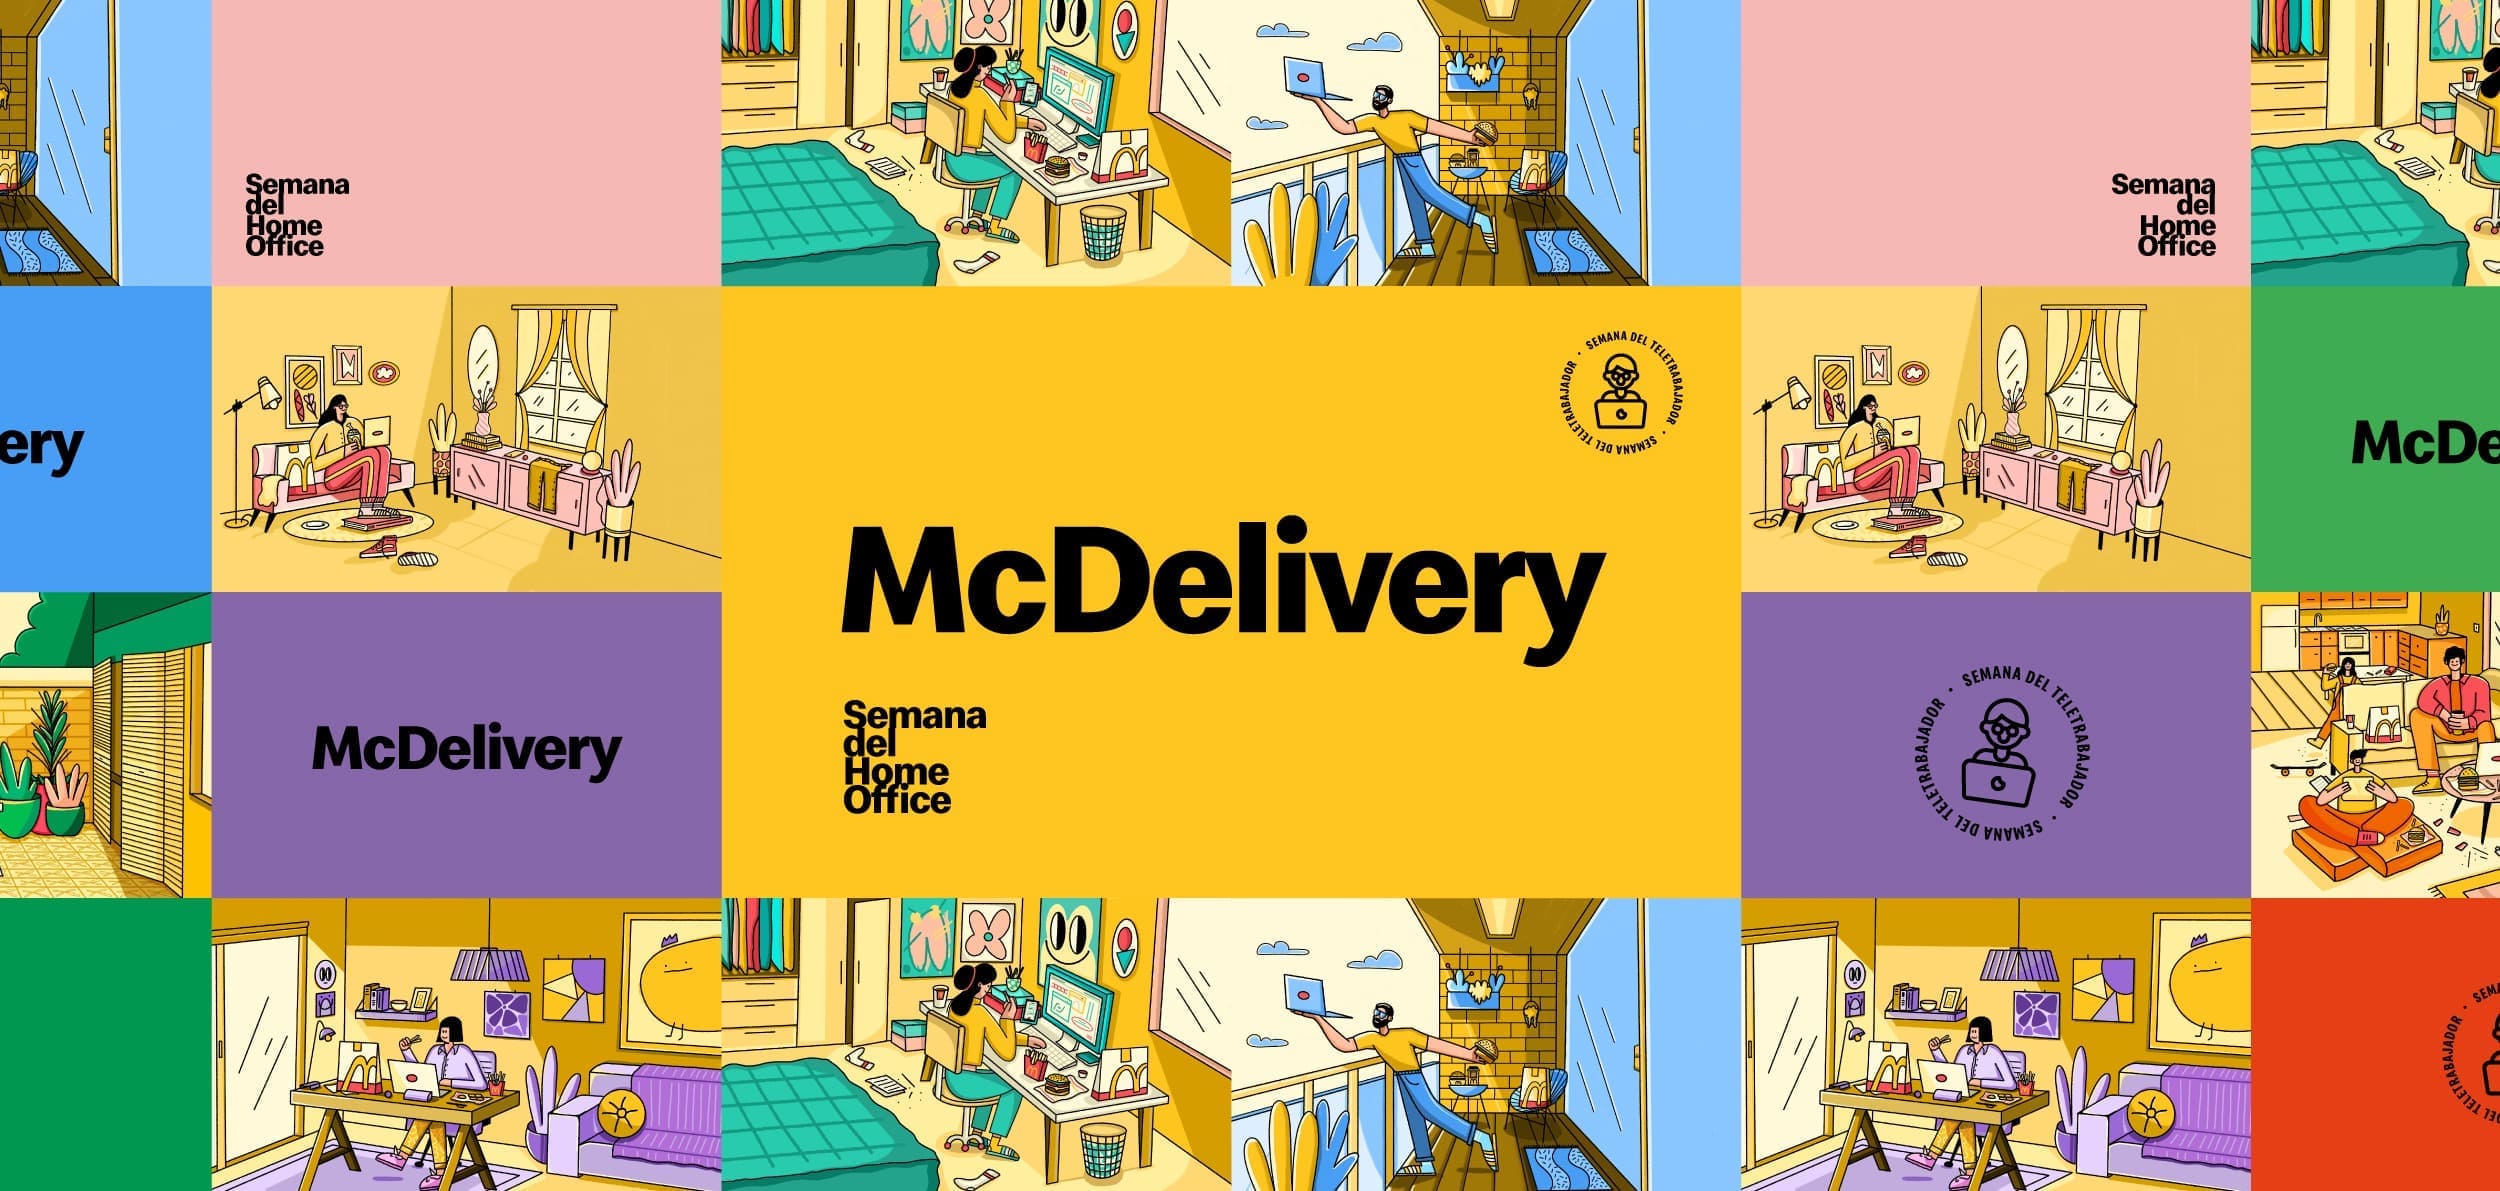 McDonald's - Home Office: Semana del teletrabajador.